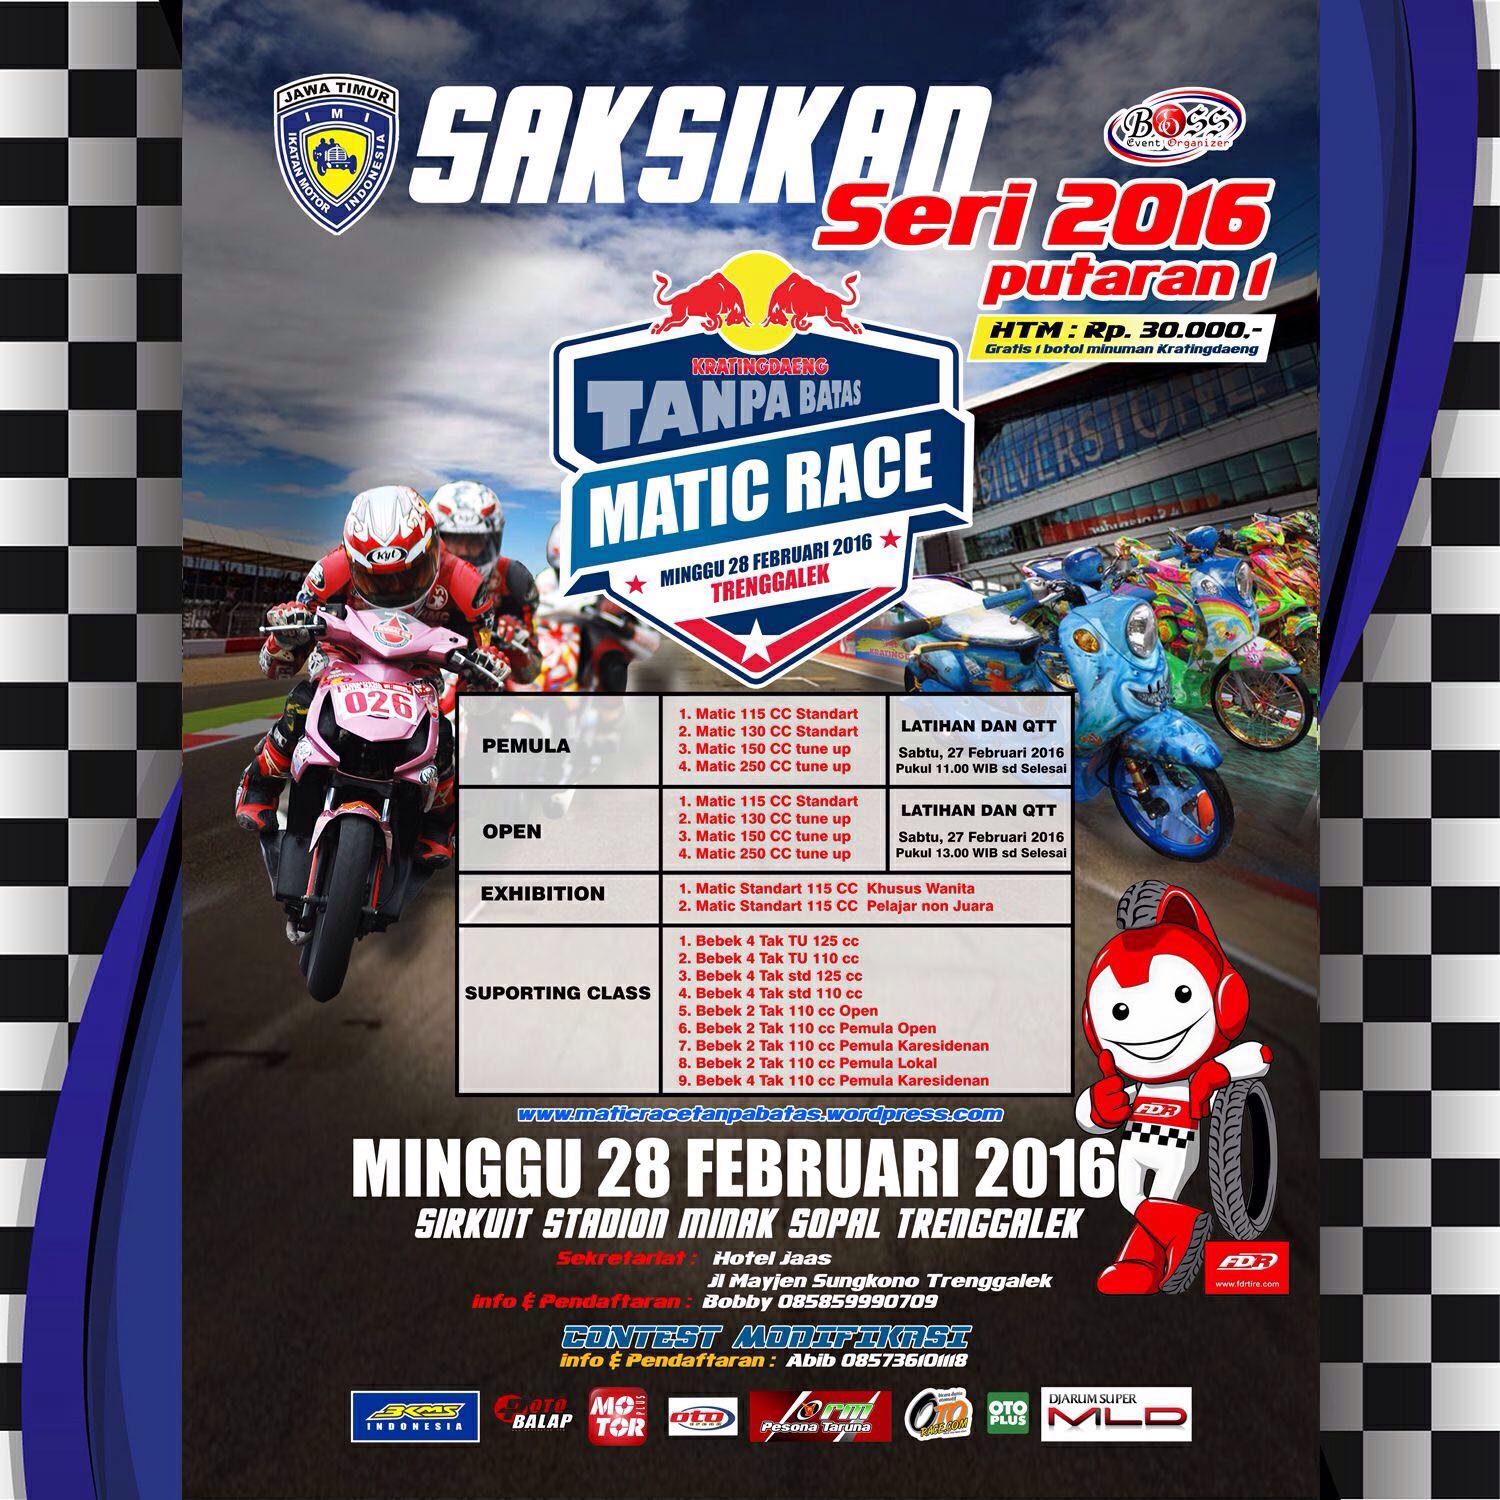 Matic Race 2016 Seri 1 Singgah Di Kota Trenggalek 28 Februari 2016